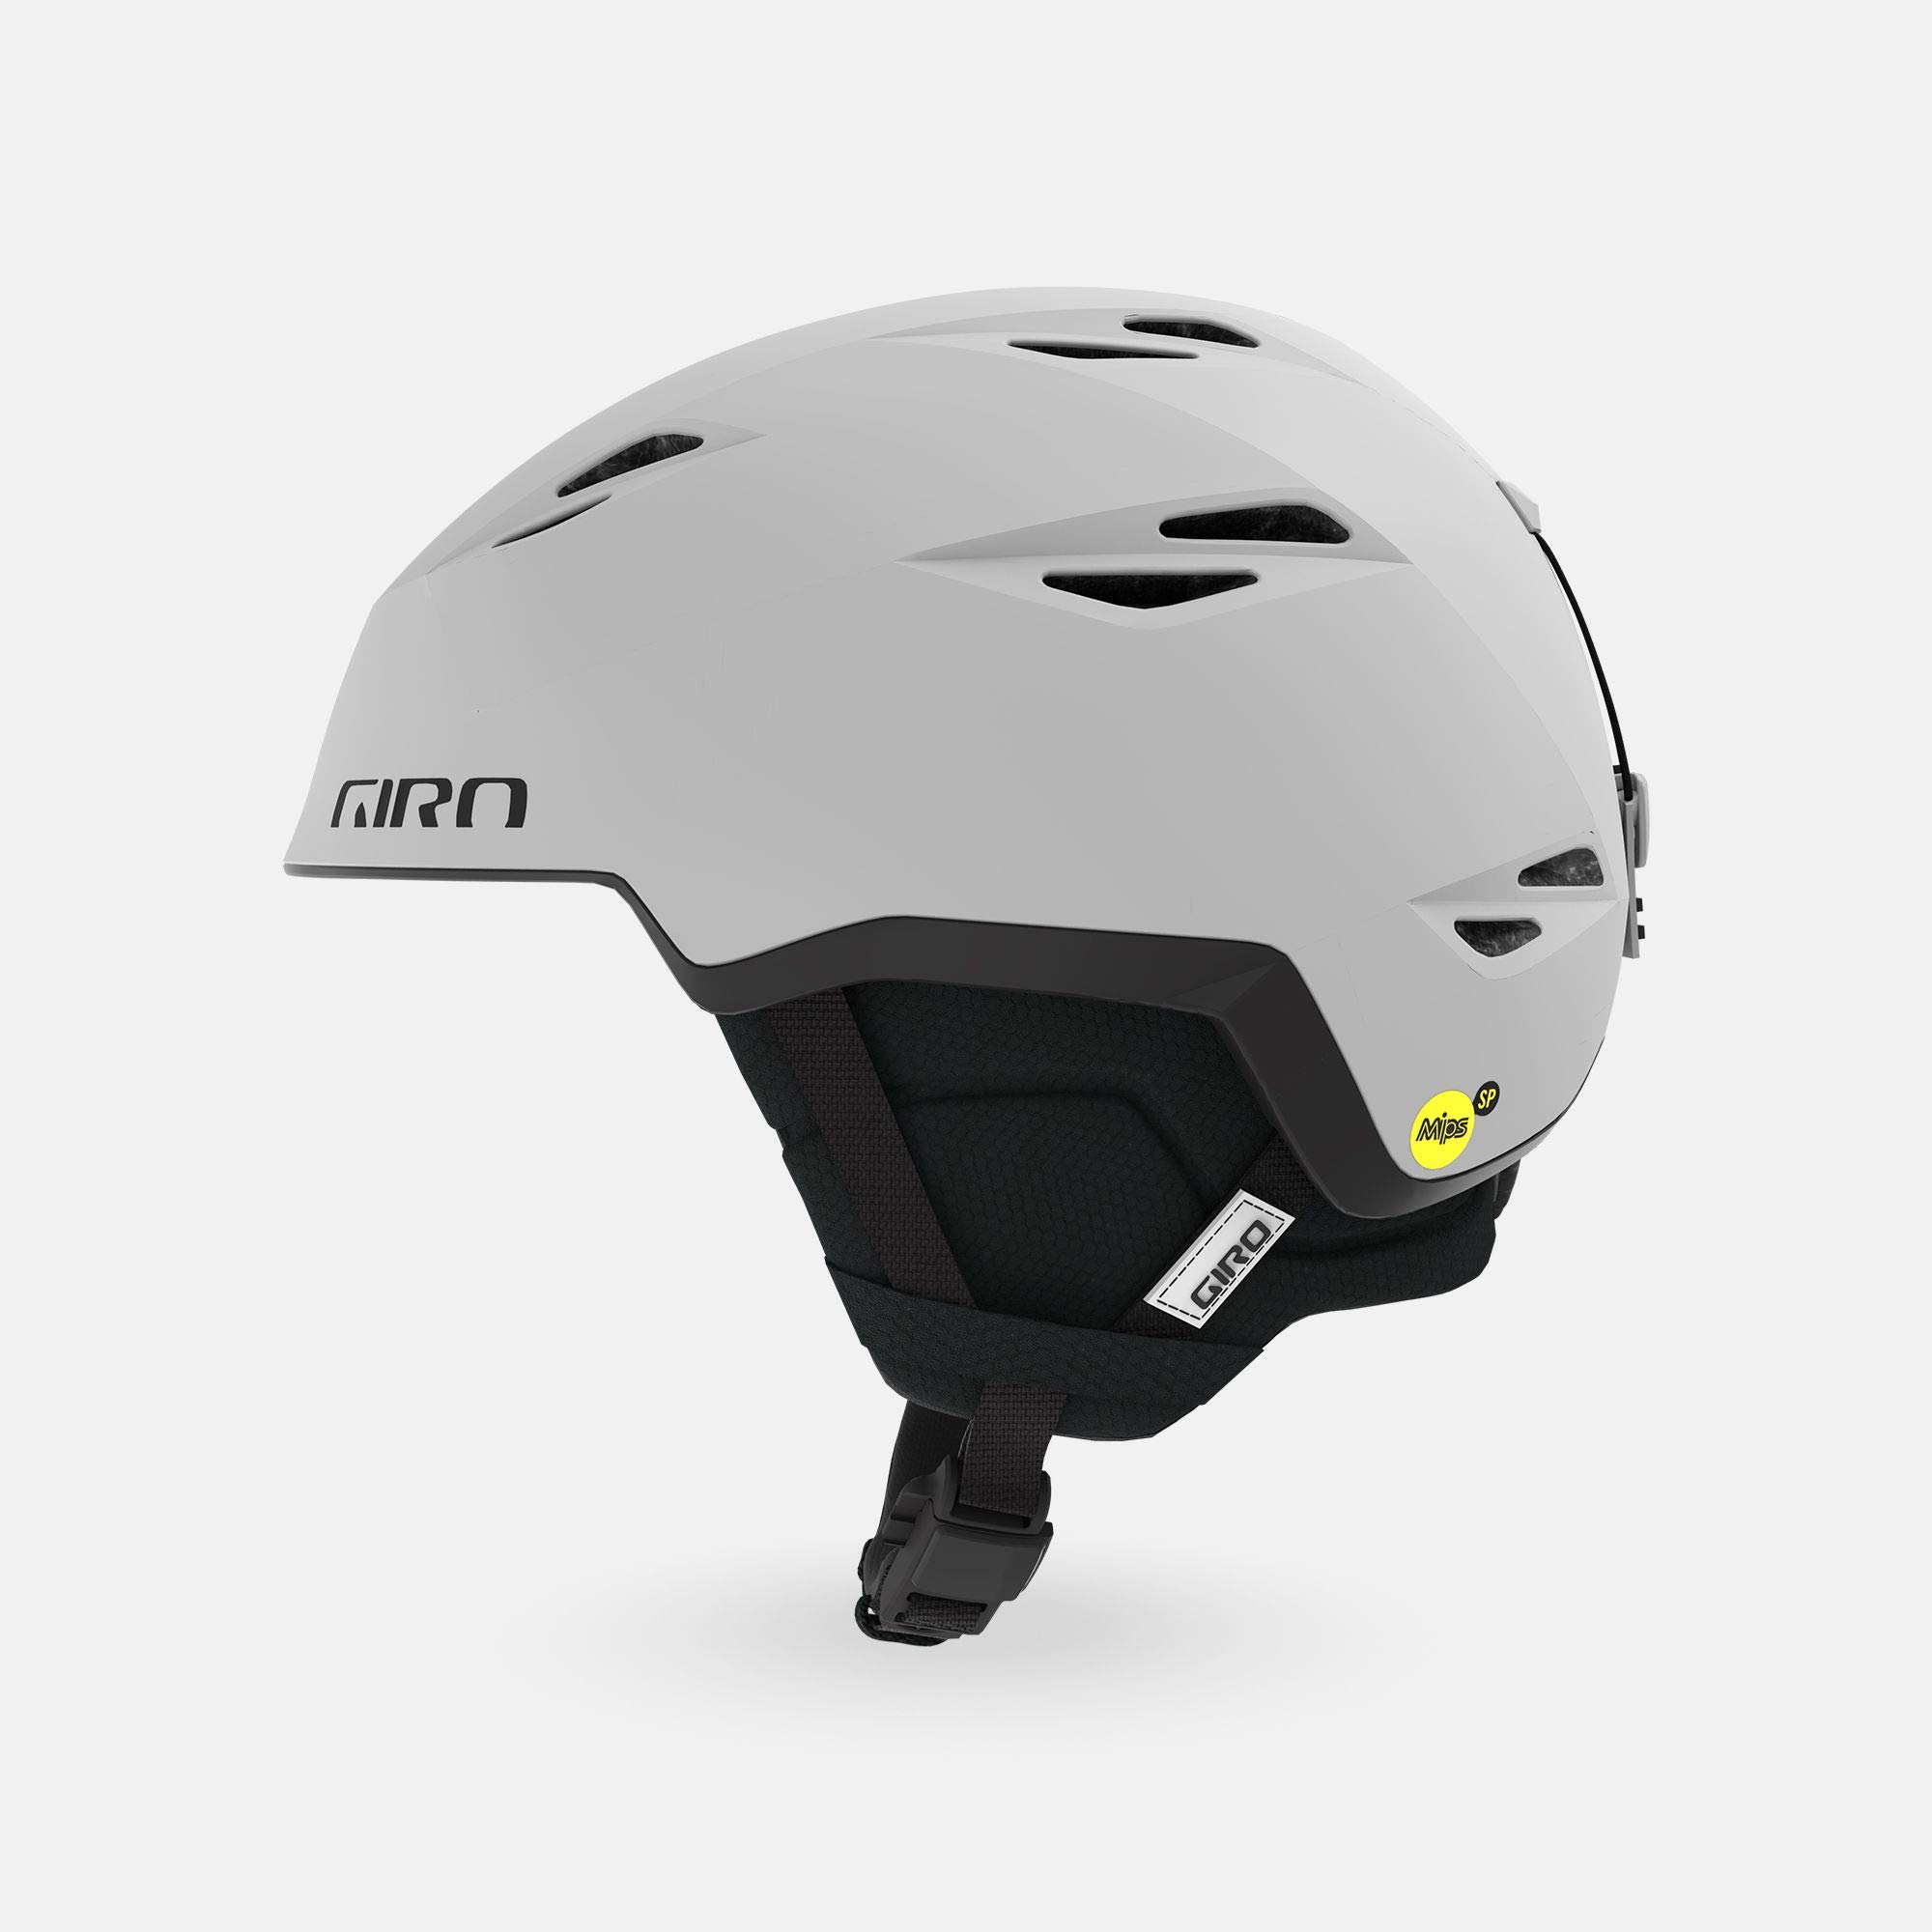 Giro Grid Spherical Ski Helmet - Snowboard Helmet for Men Women - Matte Light Grey - S 52-55.5cm並行輸入品